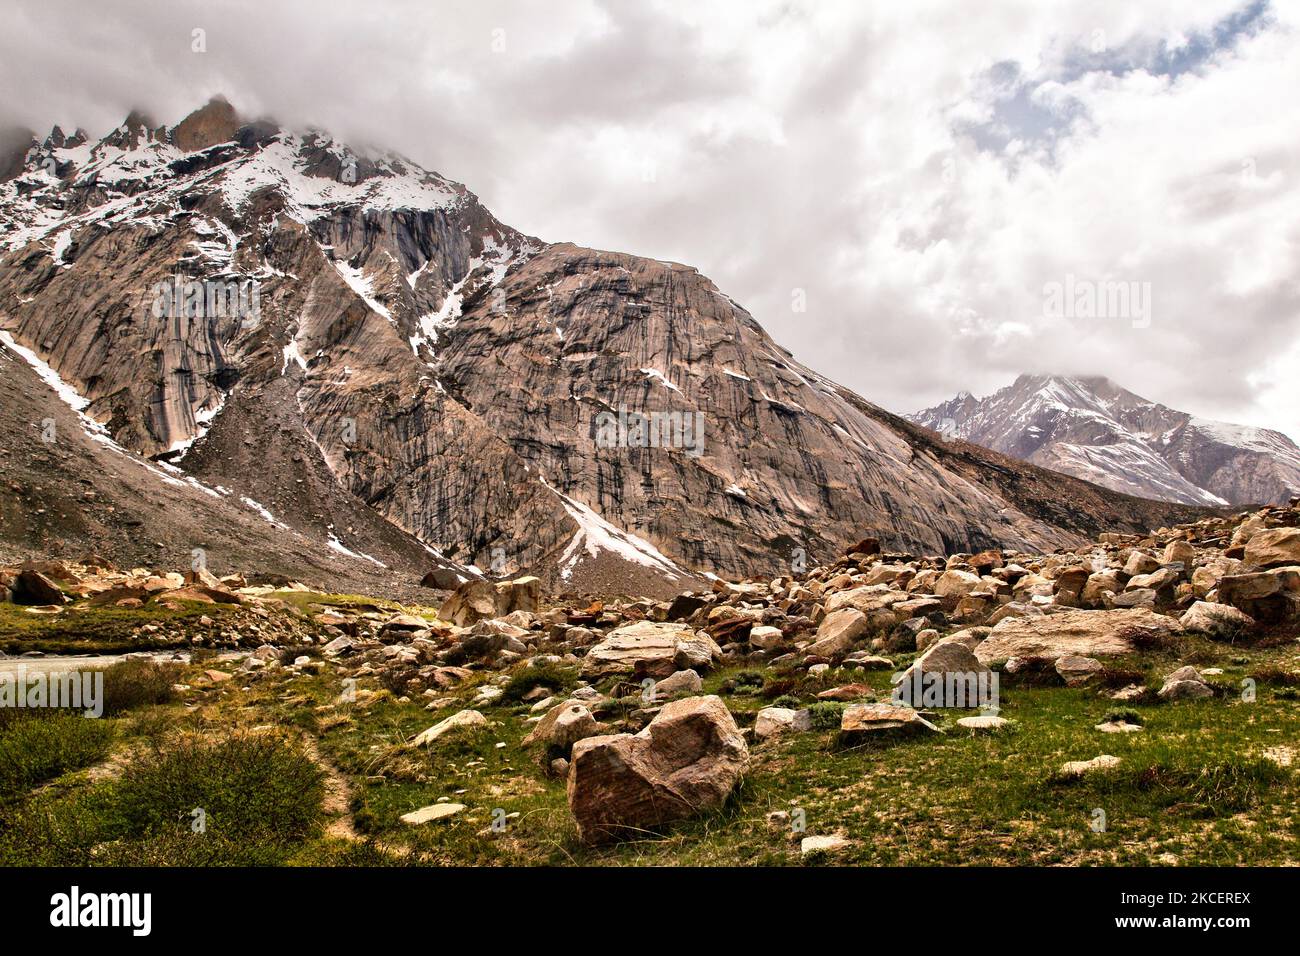 Prächtig geformte Gipfel des Himalaya in der Nähe des Panzila-Passes (Panjila-Pass) im Suru-Tal in Zanskar, Ladakh, Jammu und Kaschmir, Indien. Der Panzilla Pass ist der höchste Punkt zwischen Kargil und Padam. Der Panzilla-Pass trennt das Suru-Tal vom Zanskar-Tal. (Foto von Creative Touch Imaging Ltd./NurPhoto) Stockfoto